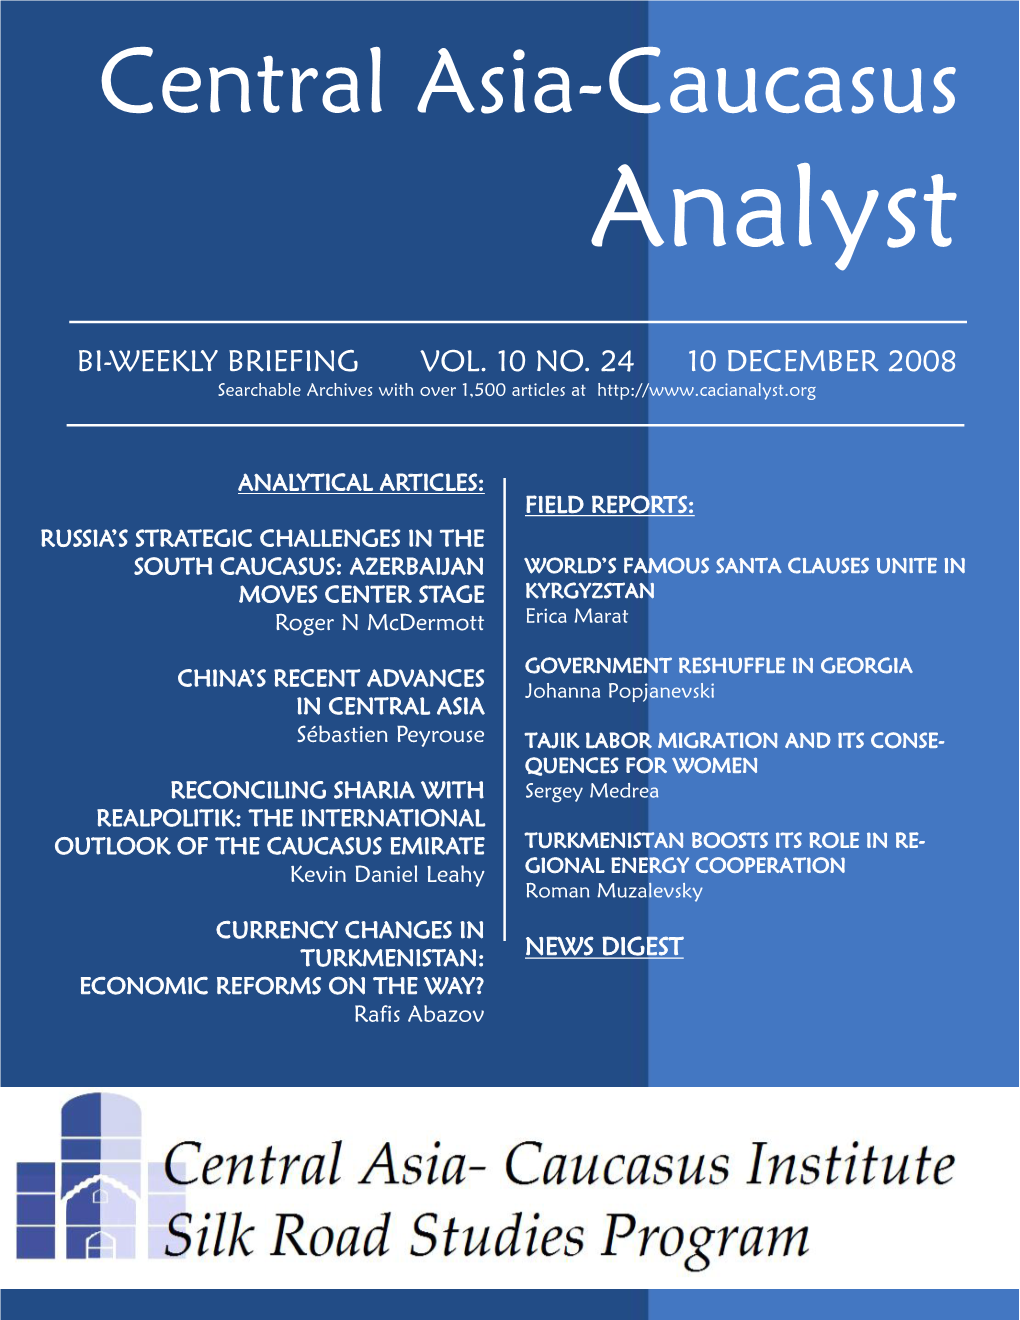 Central Asia-Caucasus Analyst Vol 10, No 24